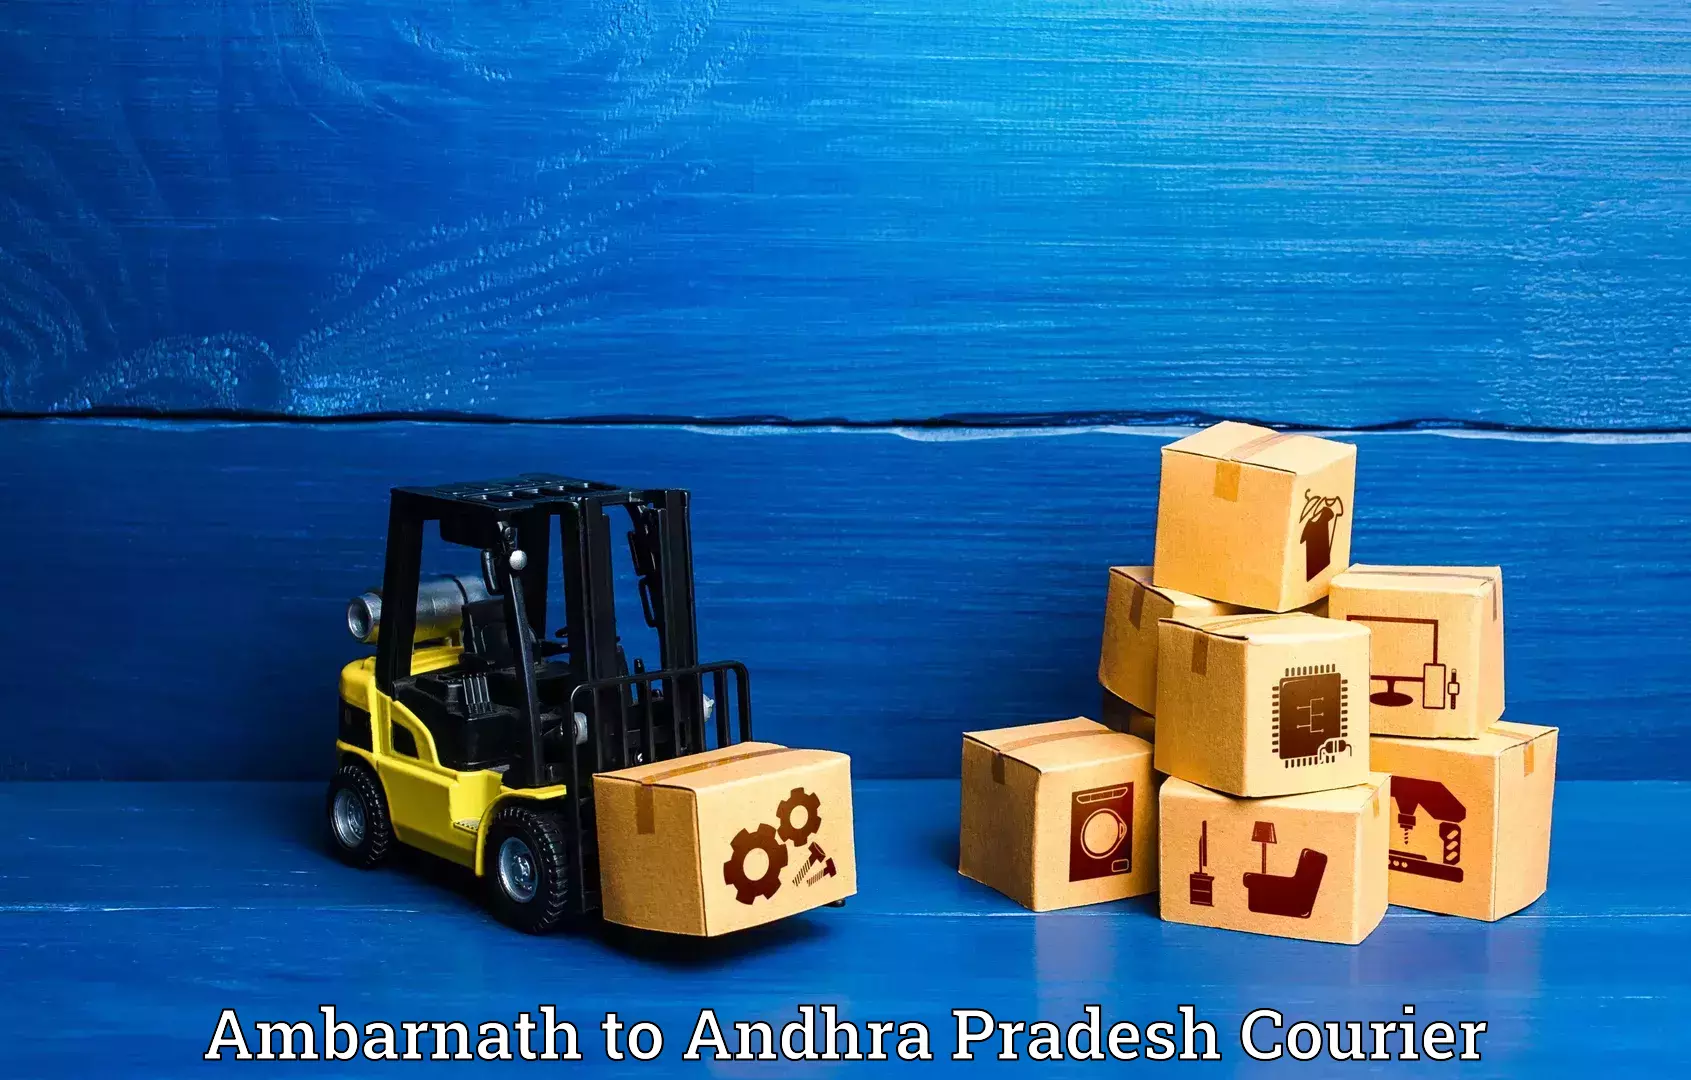 Luggage transport service Ambarnath to Veldurthi